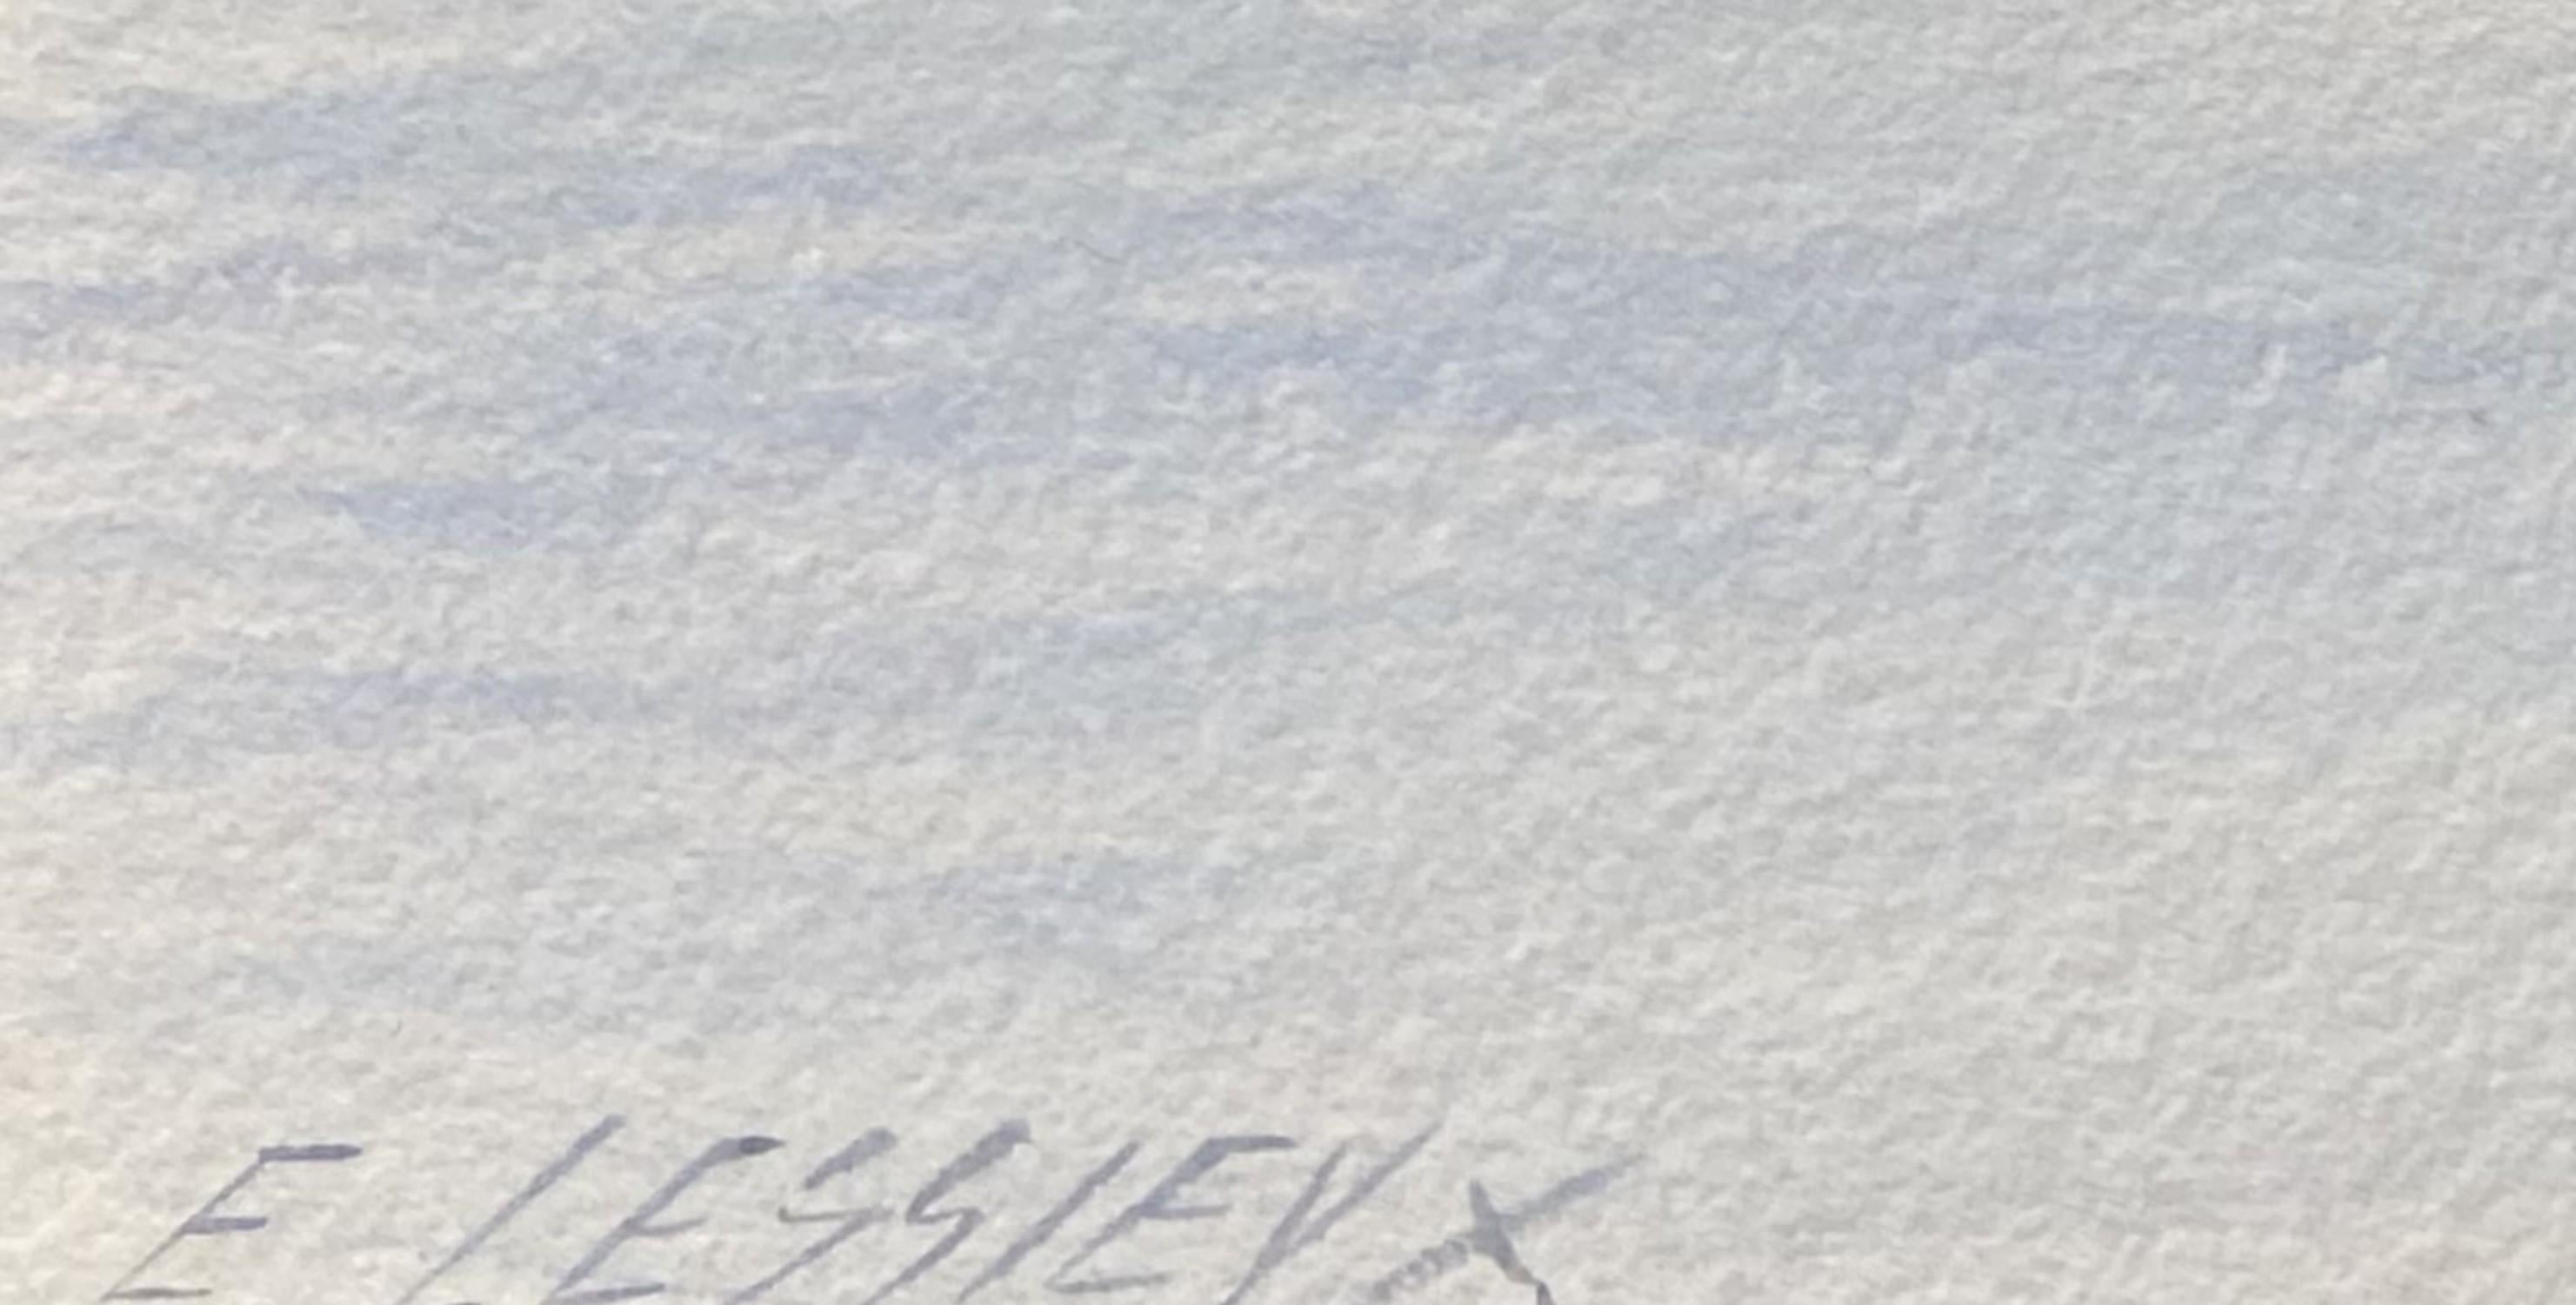 Ernest Lessieux (1848 - 1925) 
Das Meer bei ruhigem Wetter, 
signiert unten links
Aquarell auf Papier
16.5 x 24 cm
Gerahmt : 35 x 41 cm

Dieses eher untypische Werk ist eine bemerkenswerte Ergänzung des Oeuvres von Ernest Lessieux, und es ist auch